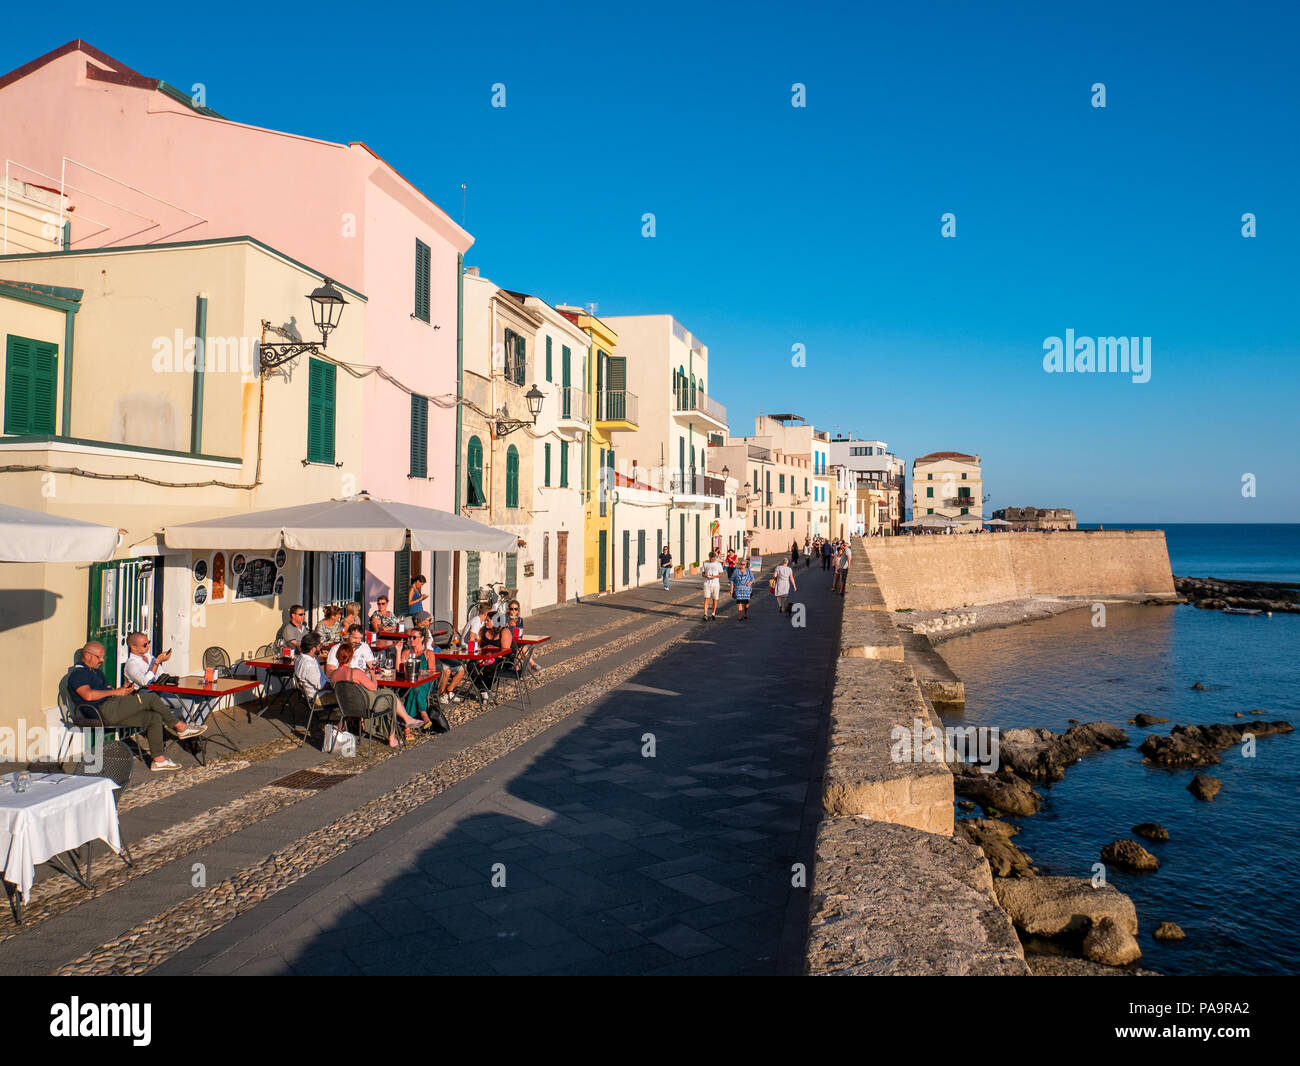 Bar au bord de l'eau sur la promenade, Alghero, Sardaigne, Italie Banque D'Images